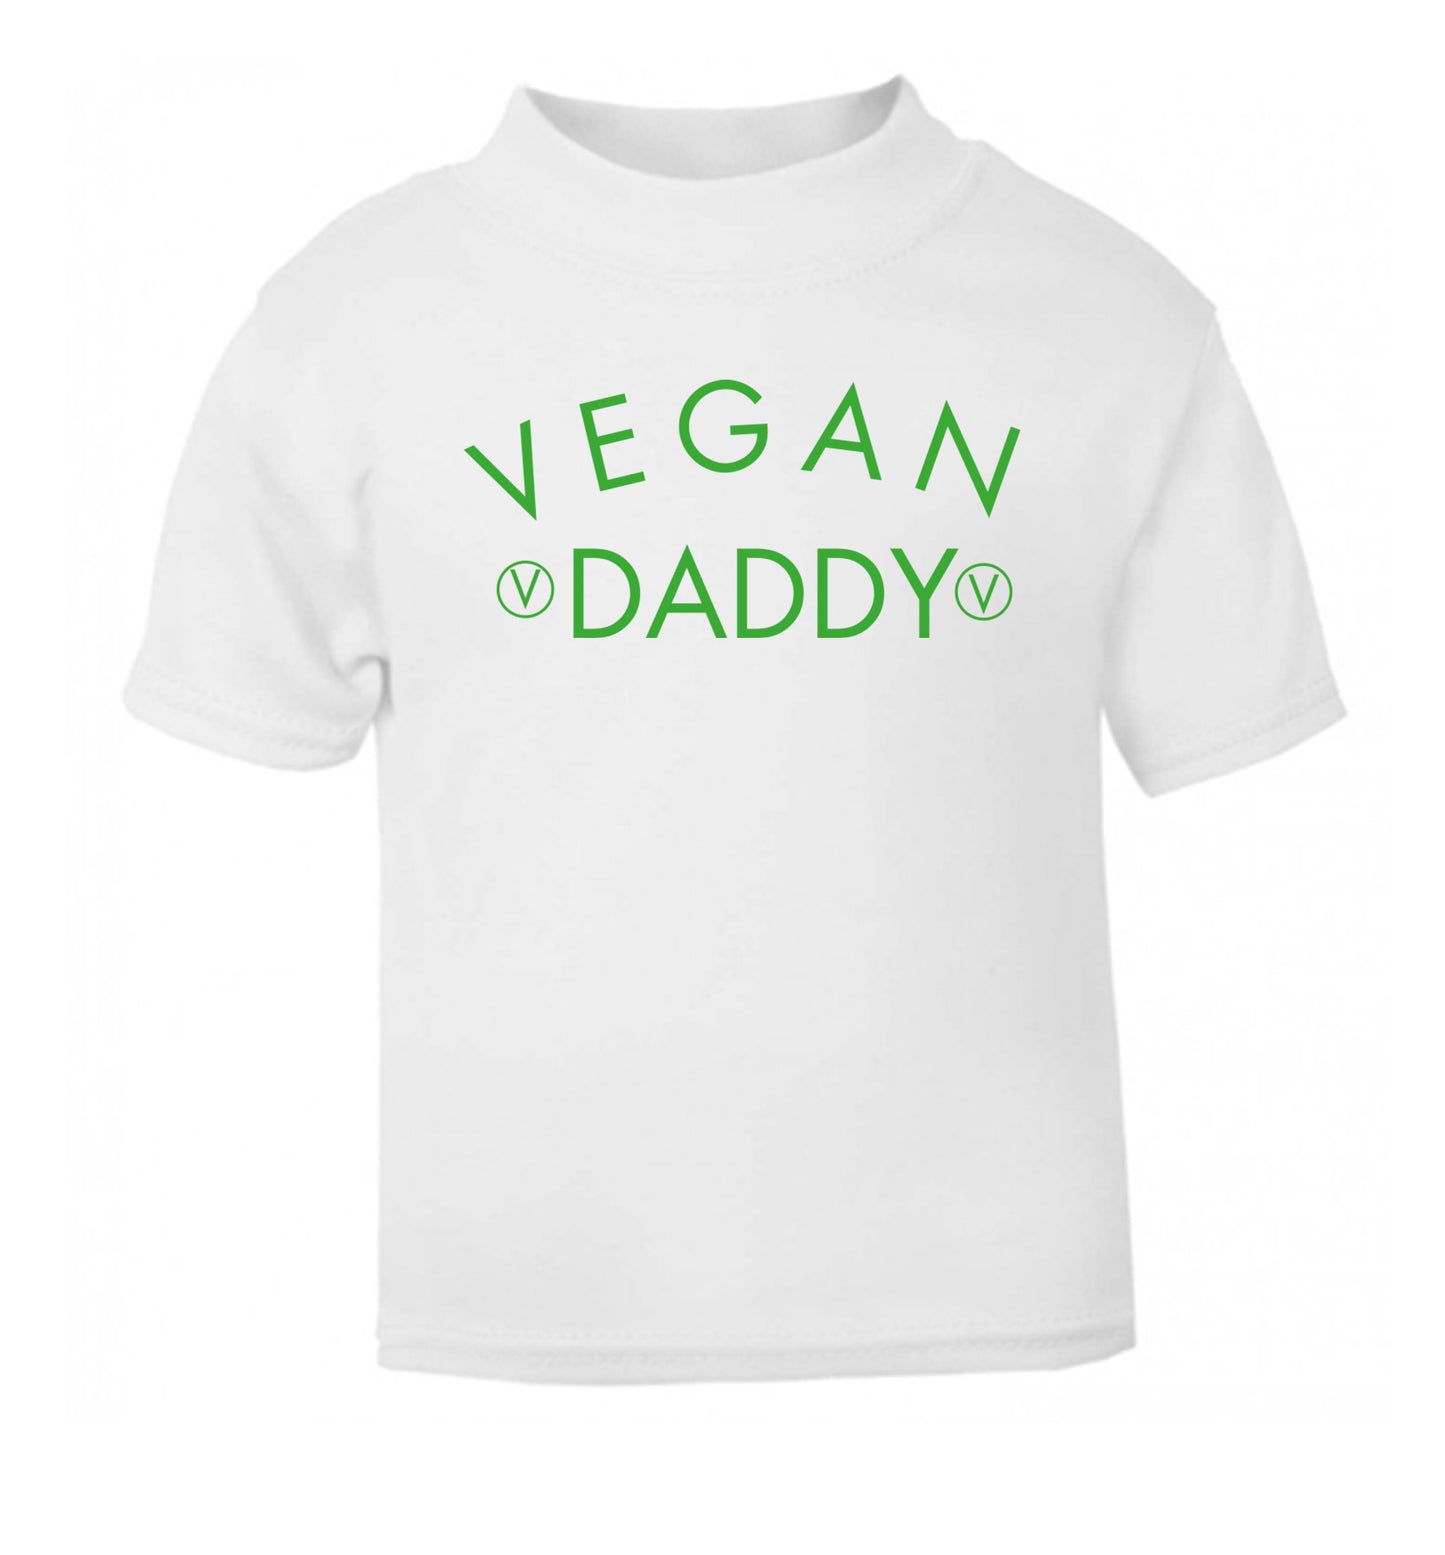 Vegan daddy white Baby Toddler Tshirt 2 Years